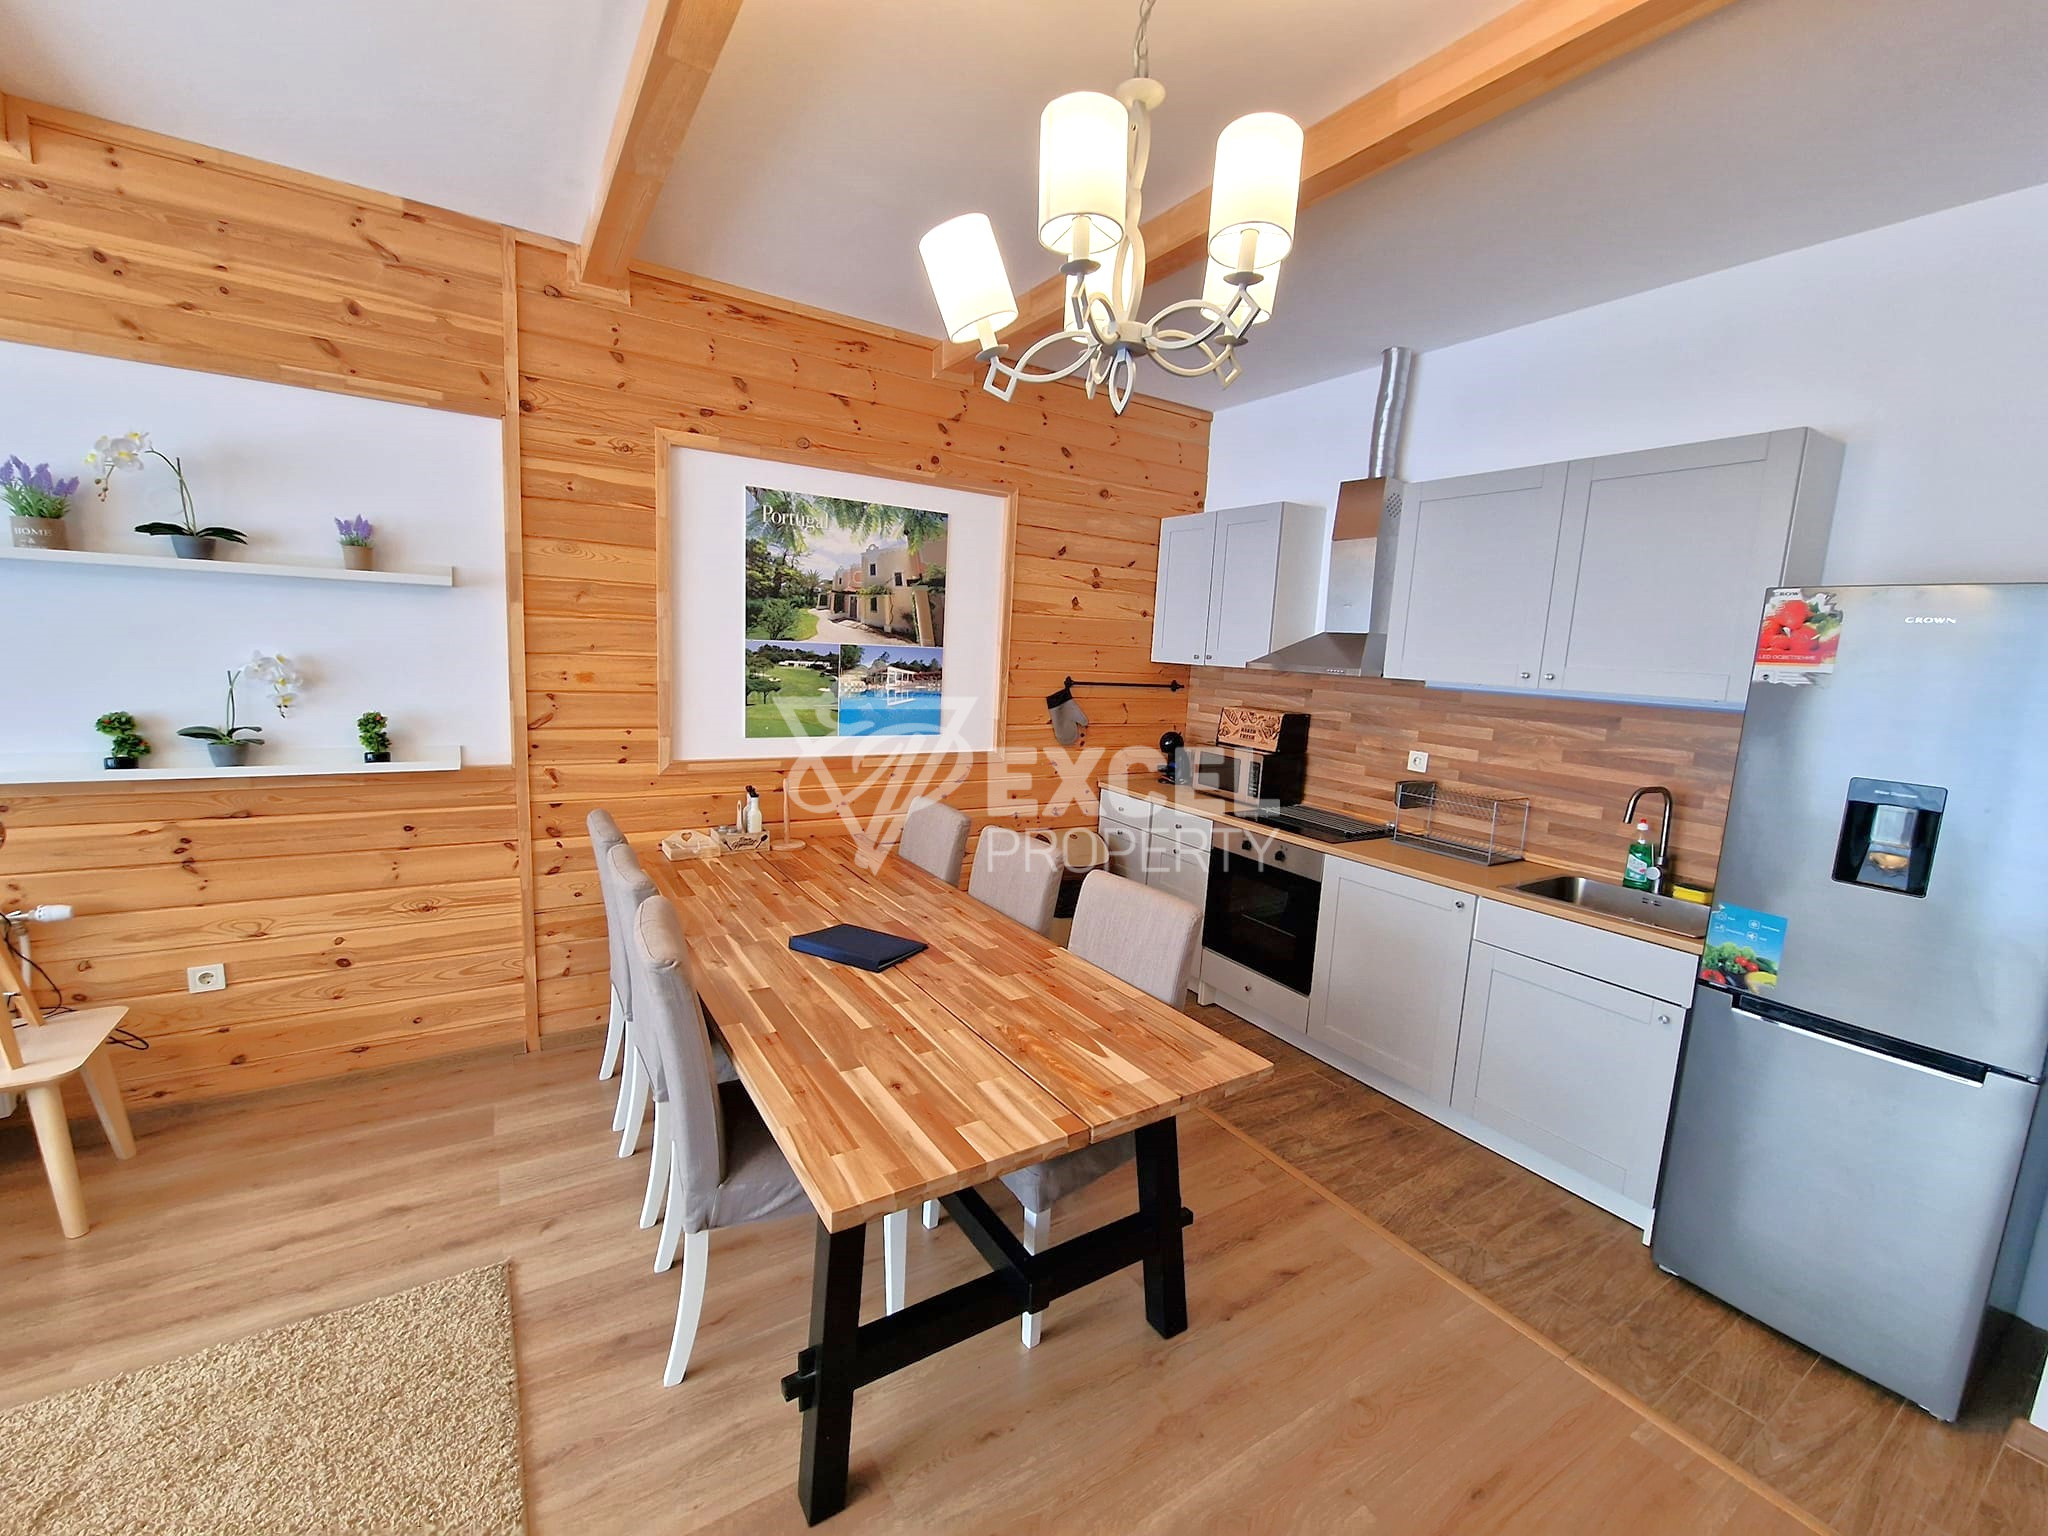 Альпийский дом с тремя спальнями на продажу в Разлоге и районе Банско! Никакой платы за обслуживание!